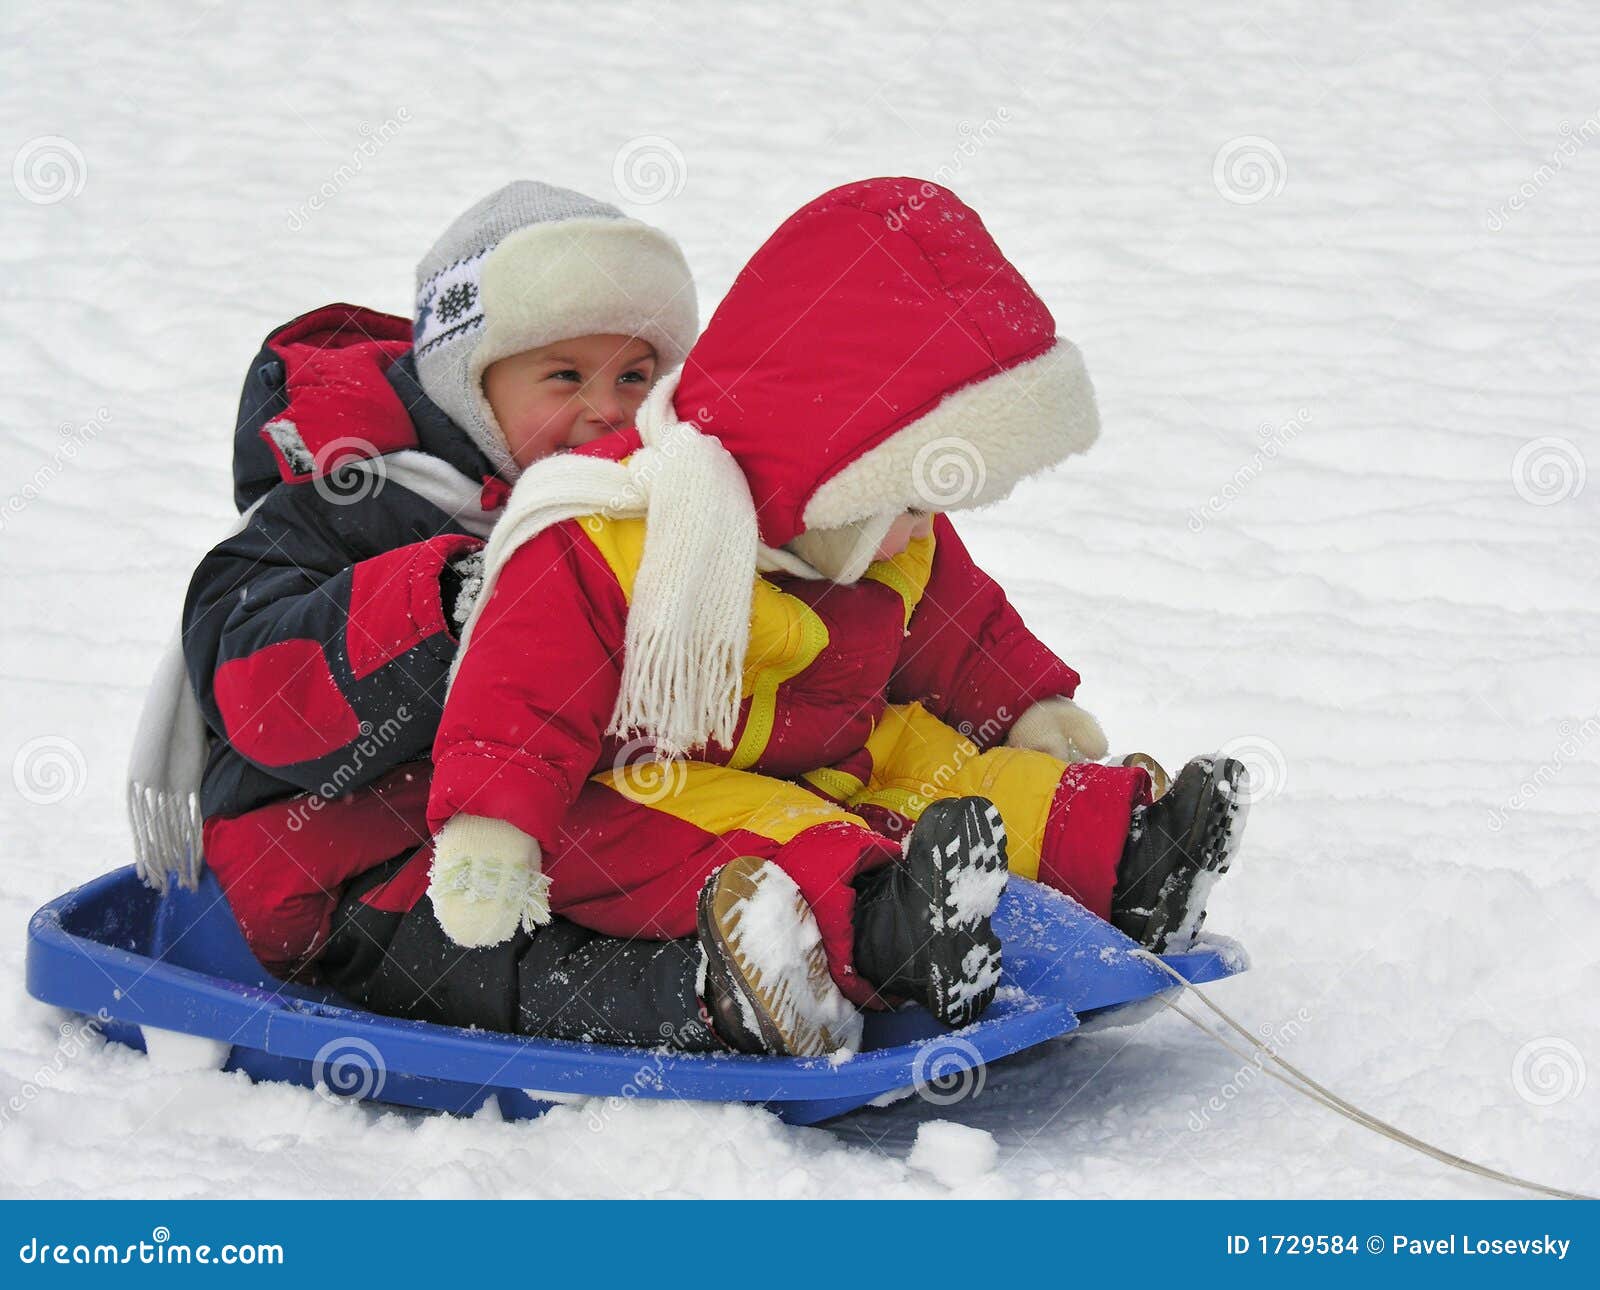 children on sled